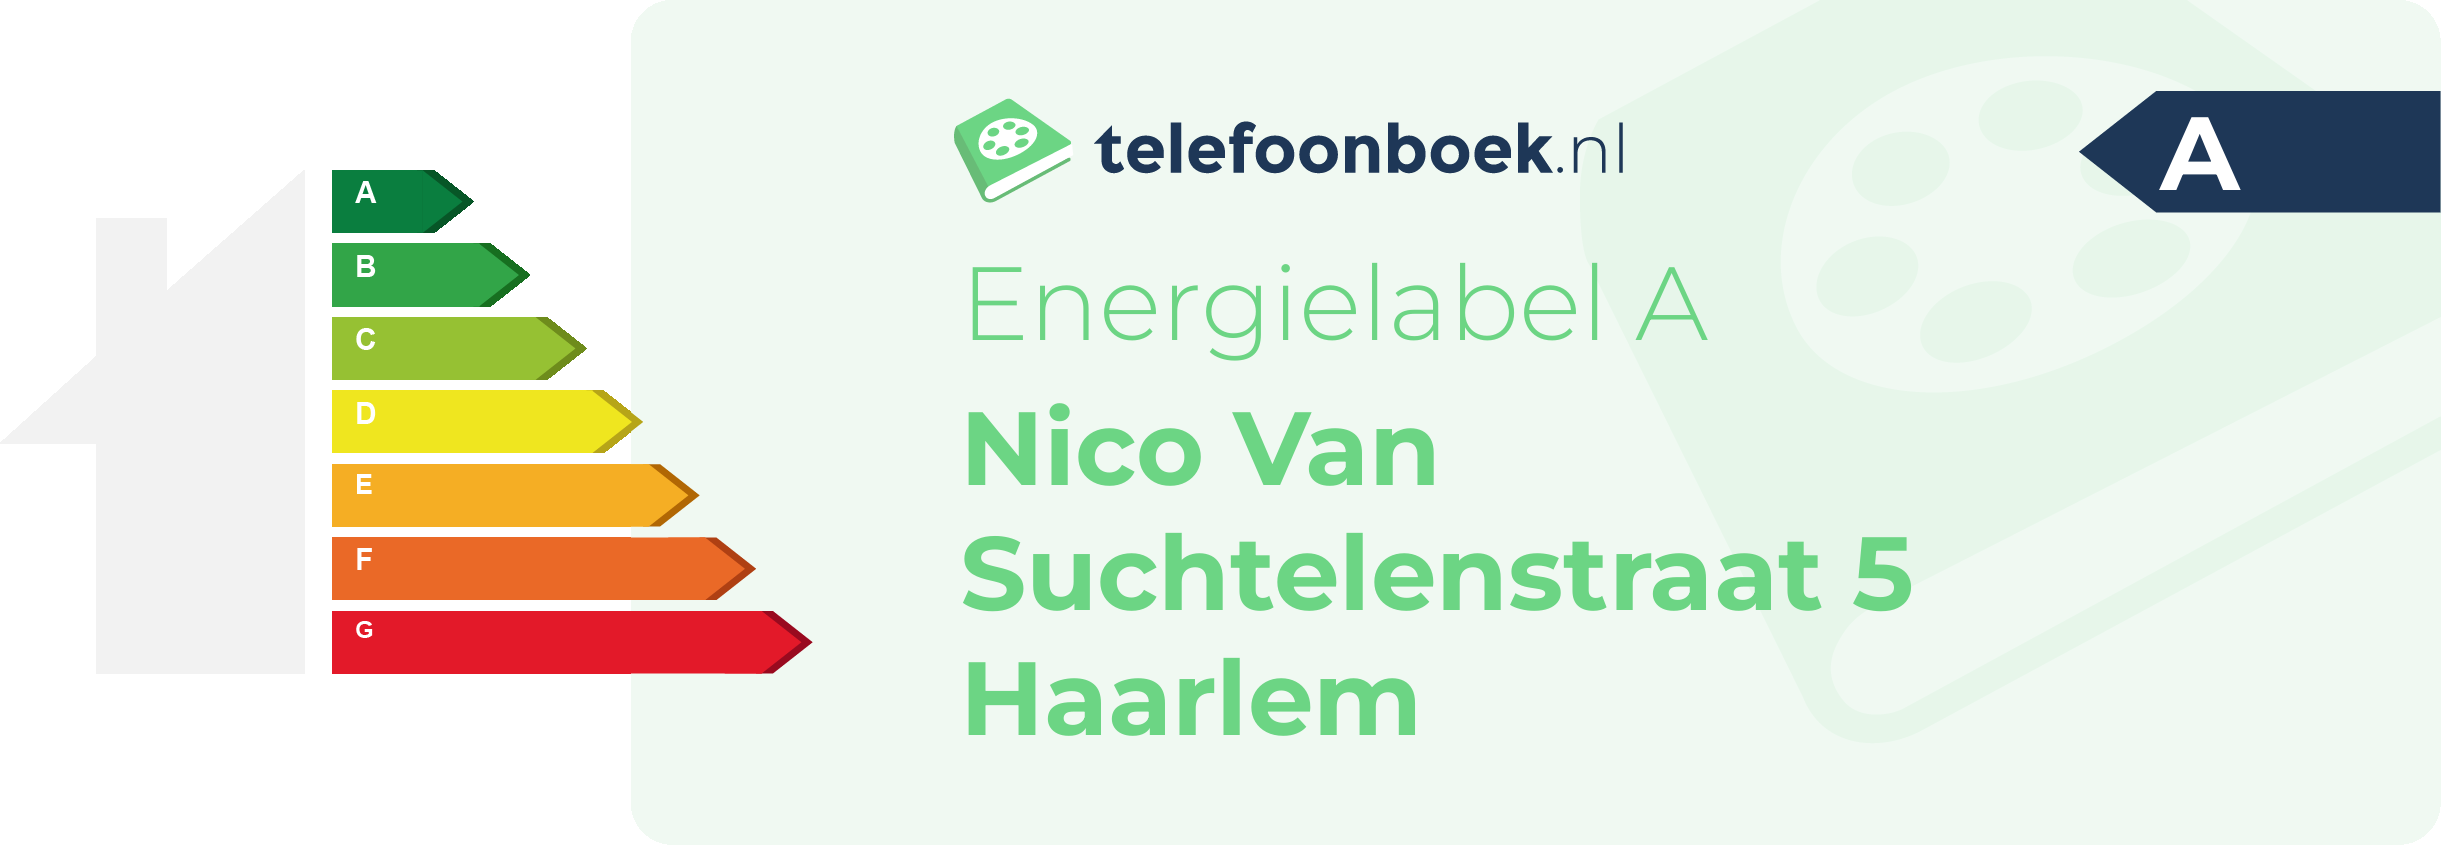 Energielabel Nico Van Suchtelenstraat 5 Haarlem